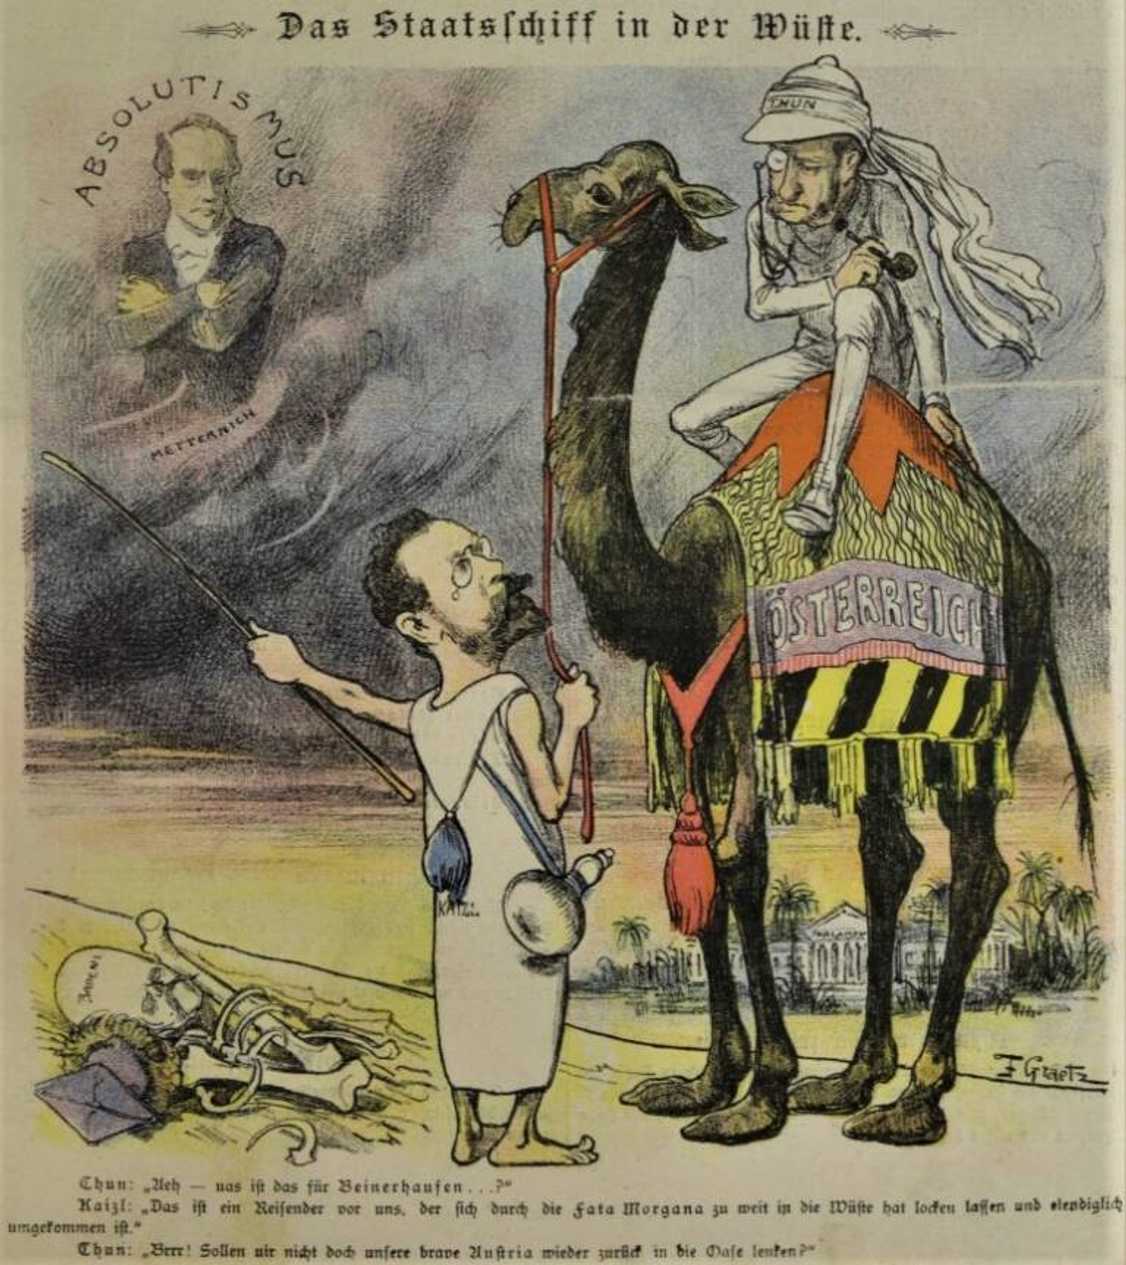 Der Staatsschiff in der Wüste / Loď státu na poušti (Neue Glühlichter, 18. 8. 1898)
